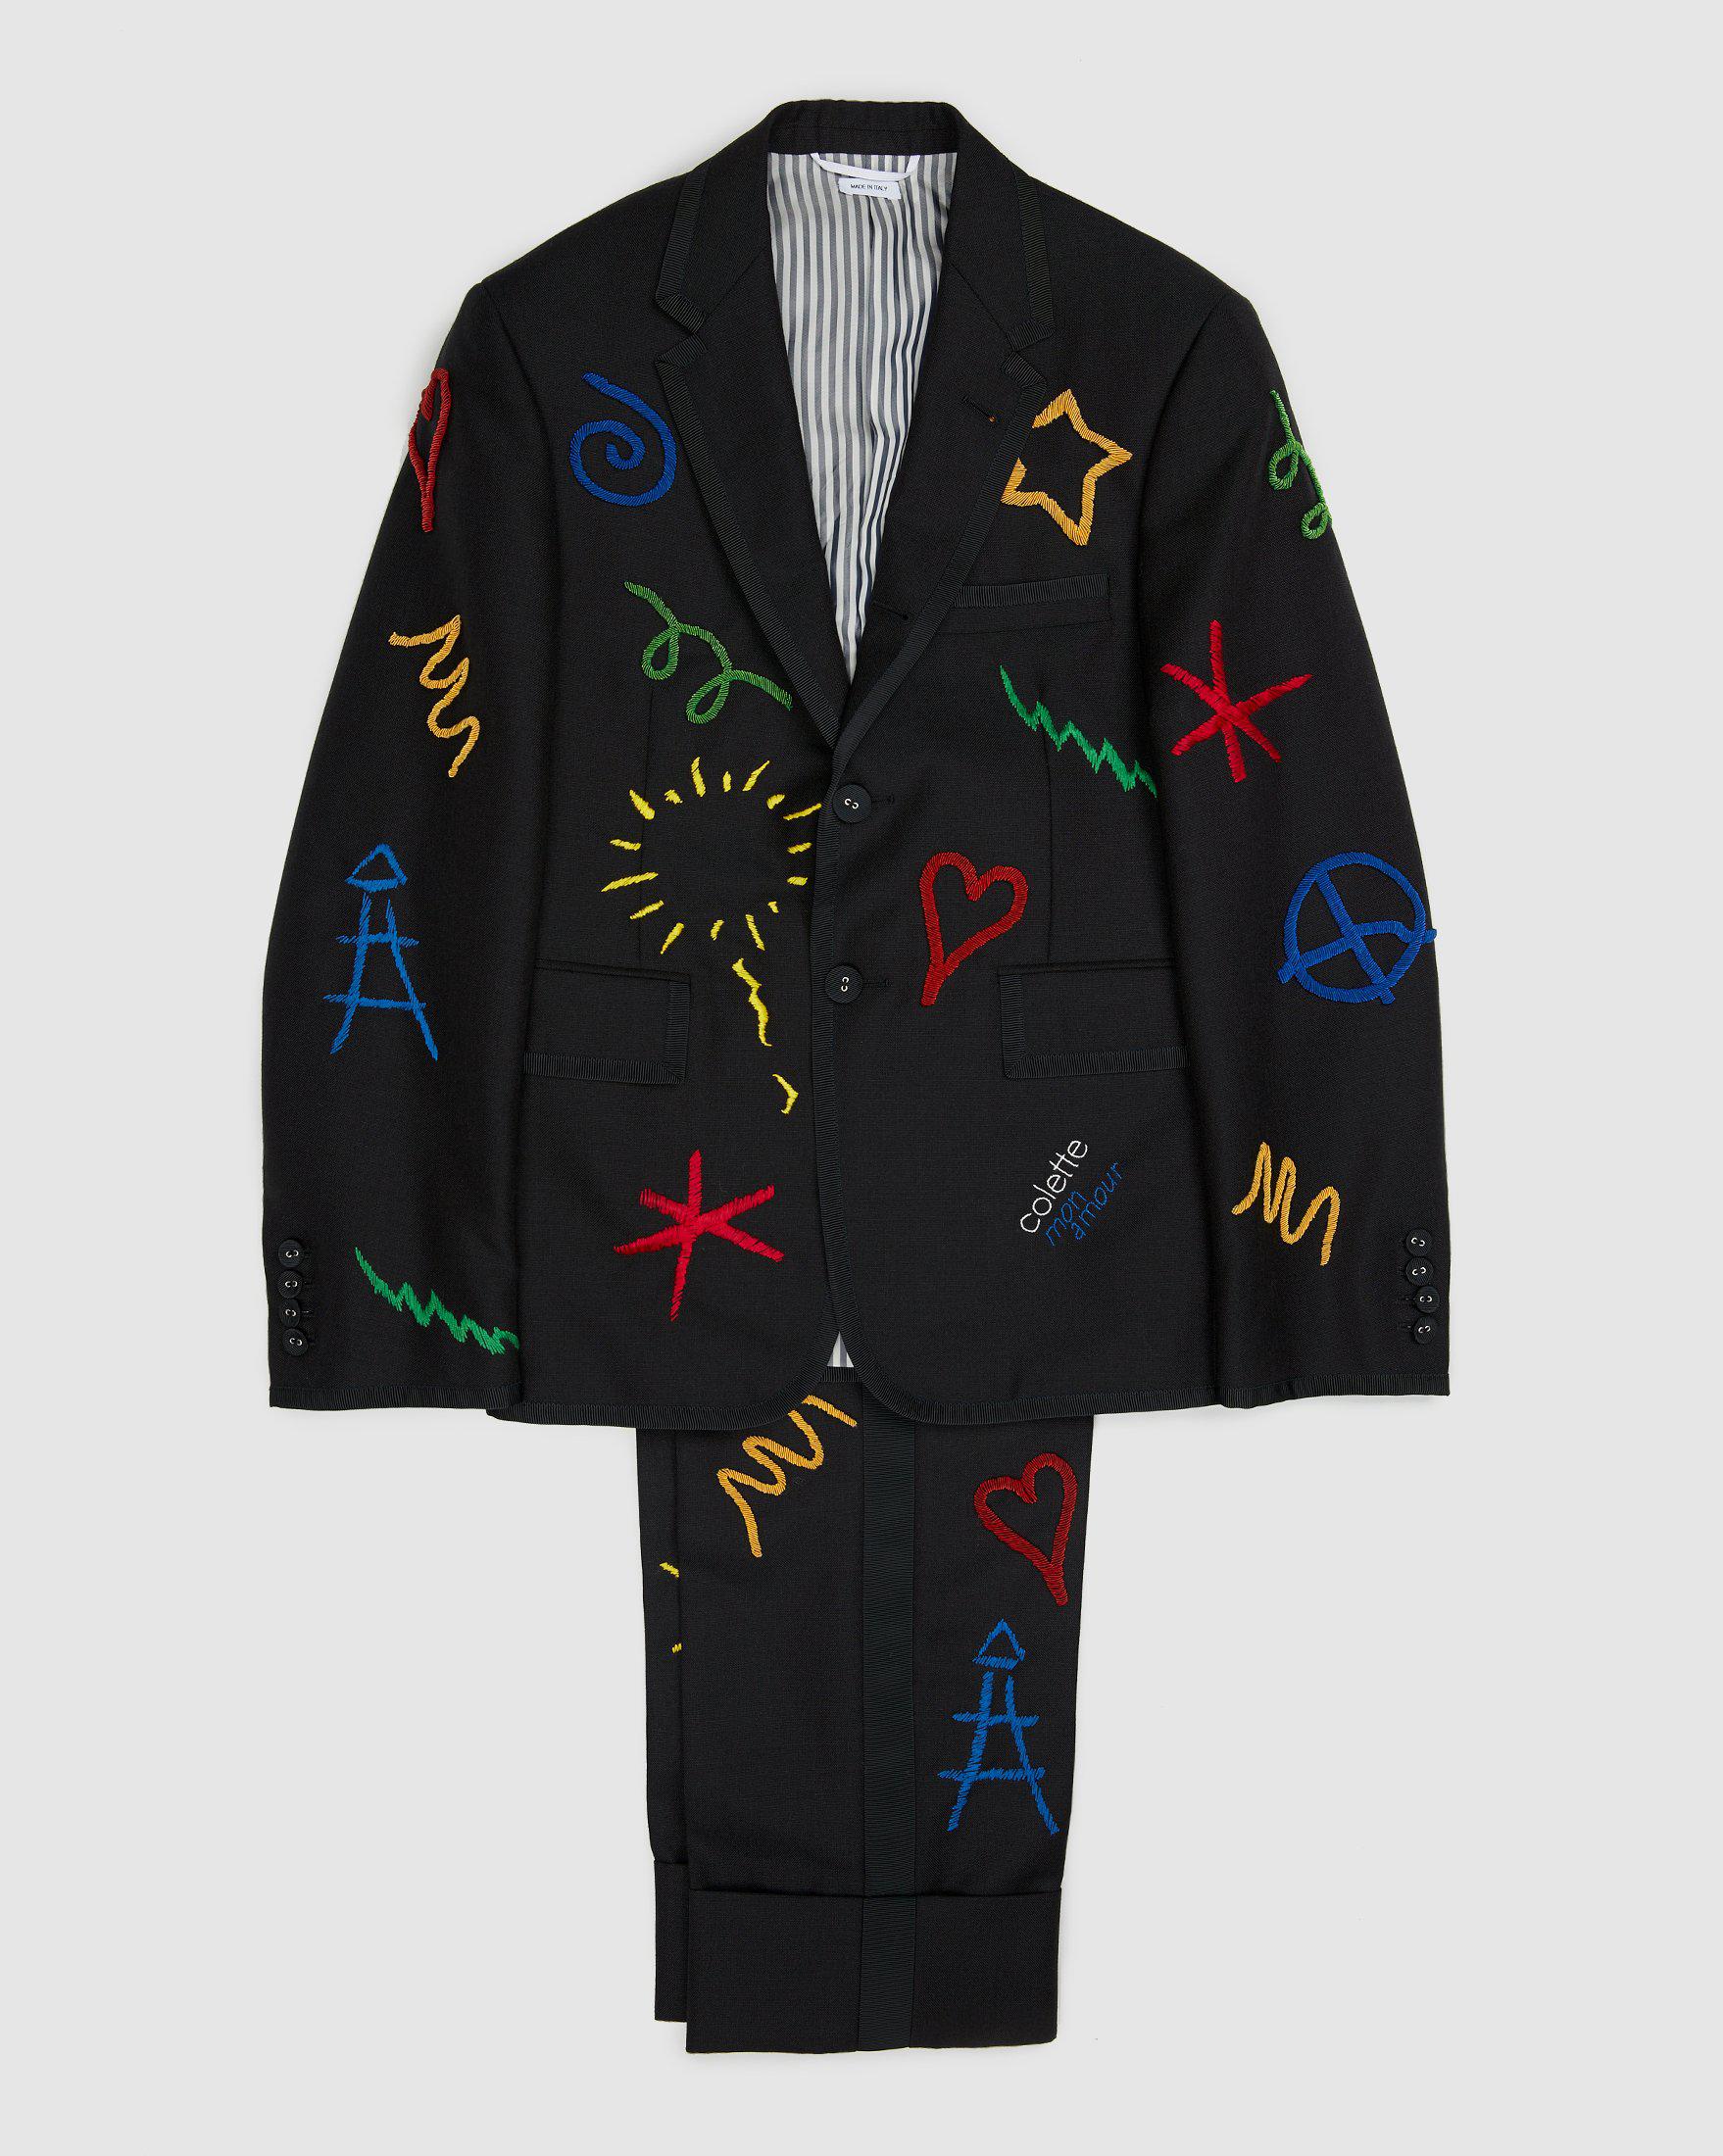 Colette Mon Amour x Thom Browne – Black Embroidered Tux Suit by COLETTE MON AMOUR X THOM BROWNE